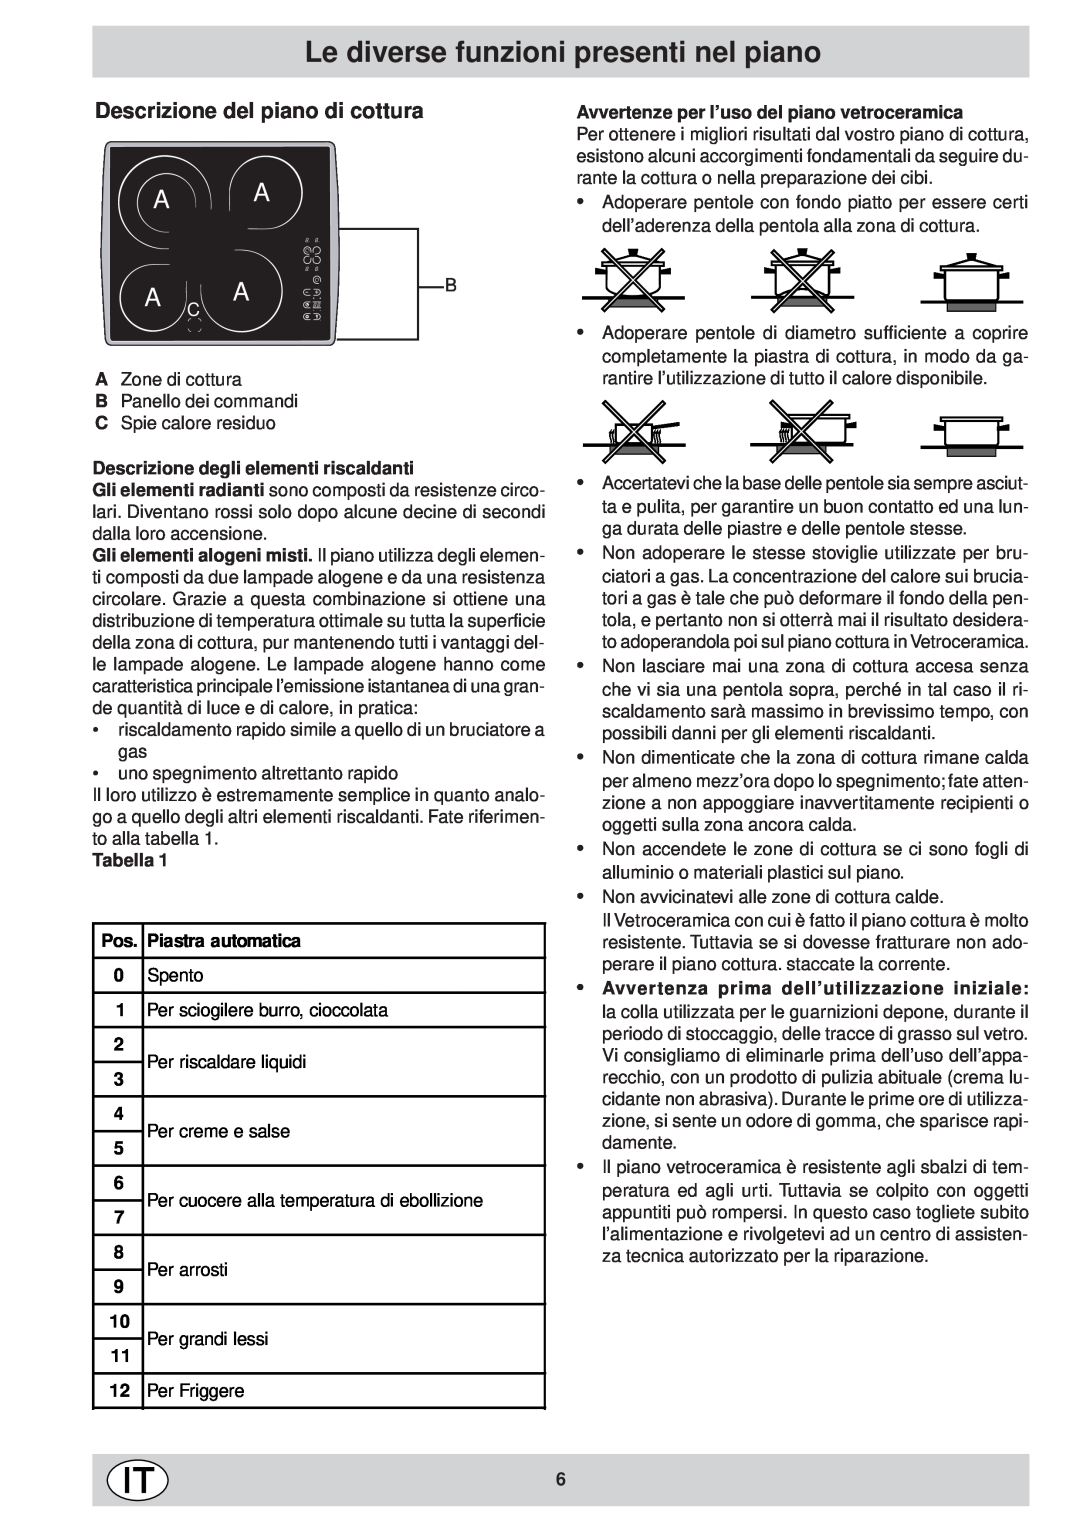 Ariston KT 8104 QO manual Le diverse funzioni presenti nel piano, Descrizione degli elementi riscaldanti, Tabella, Spento 